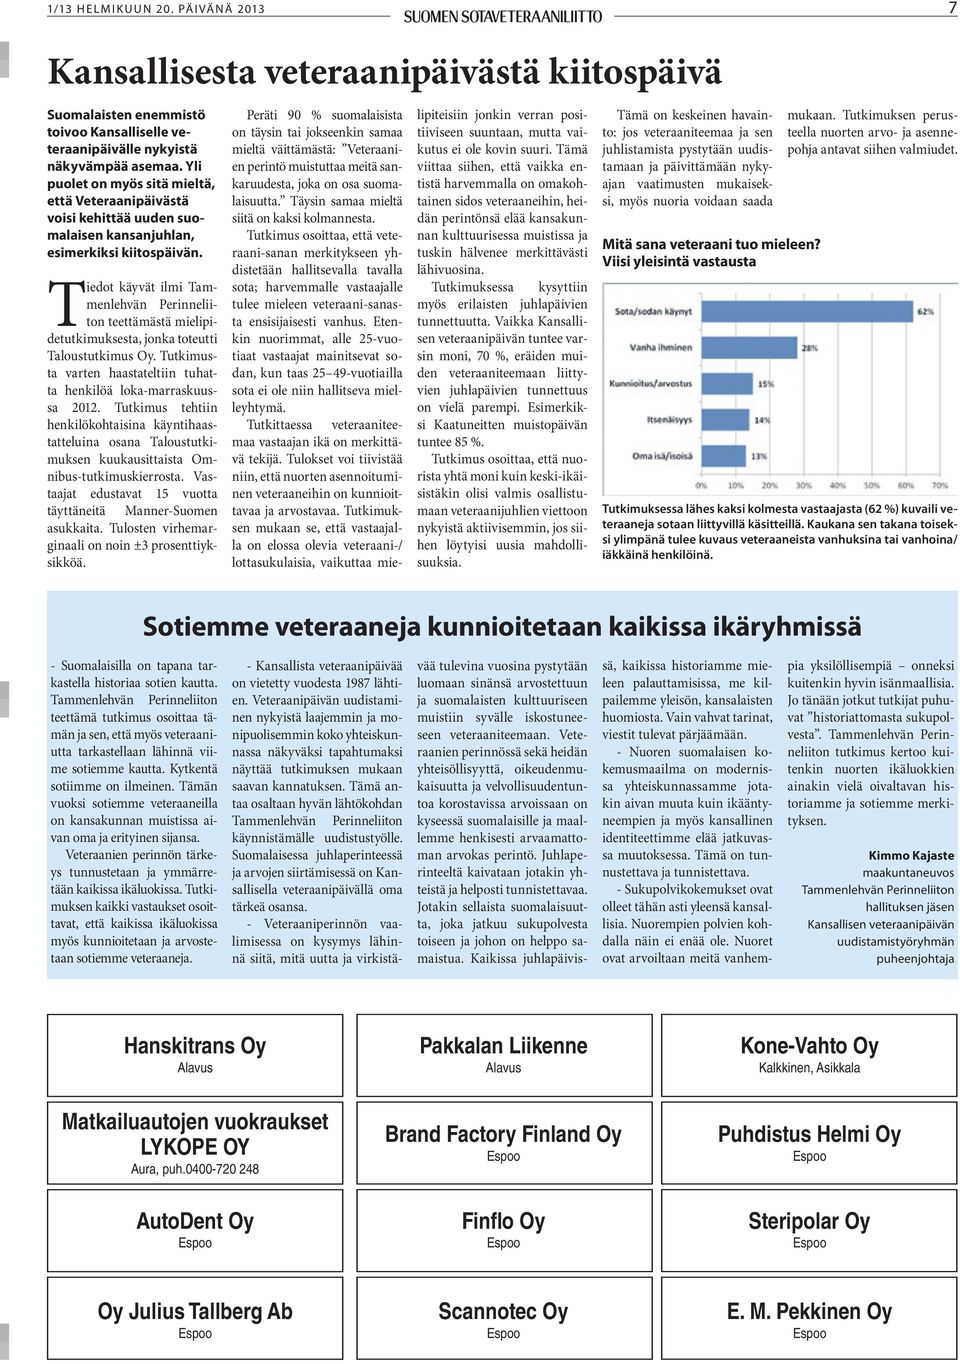 Tiedot käyvät ilmi Tammenlehvän Perinneliiton teettämästä mielipidetutkimuksesta, jonka toteutti Taloustutkimus Oy. Tutkimusta varten haastateltiin tuhatta henkilöä loka-marraskuussa 2012.